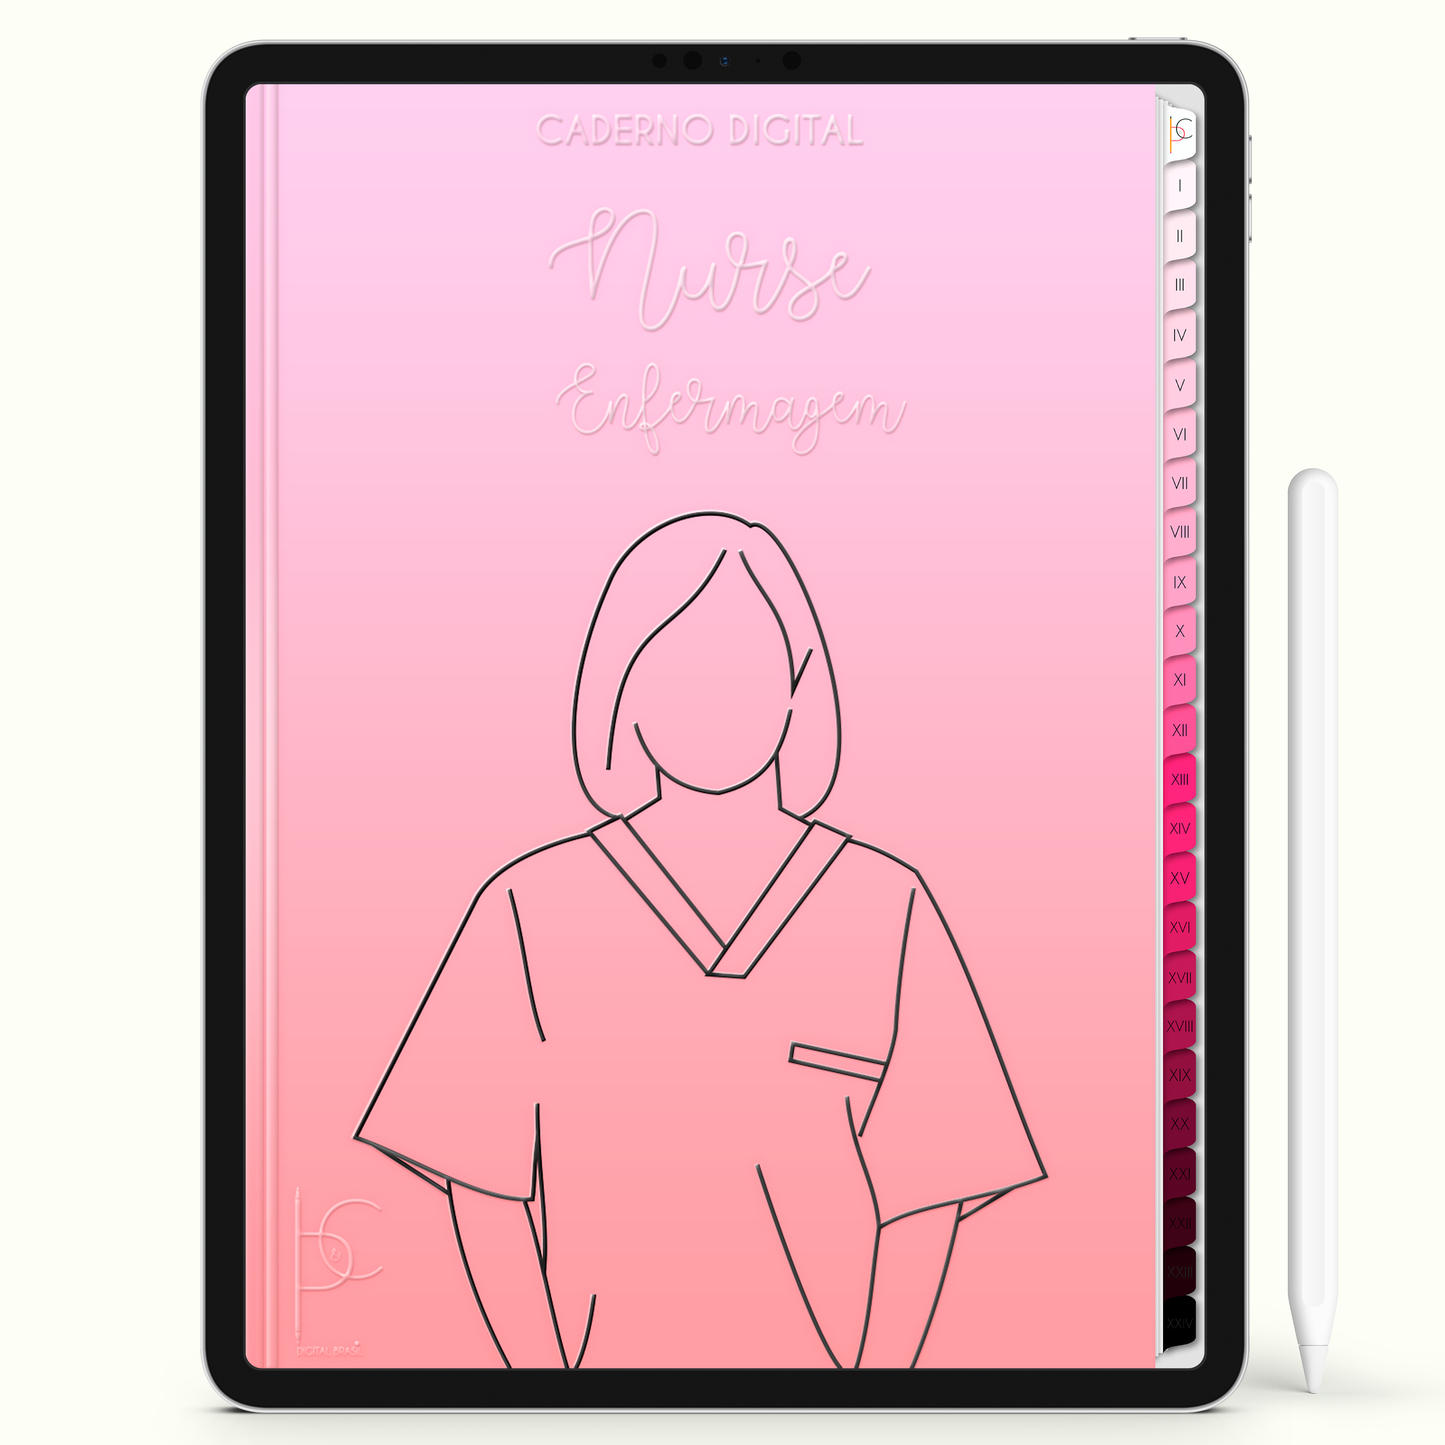 Caderno Digital Blush Nurse Enfermagem Blush 24 Matérias • iPad Tablet Android • Download instantâneo • Sustentável